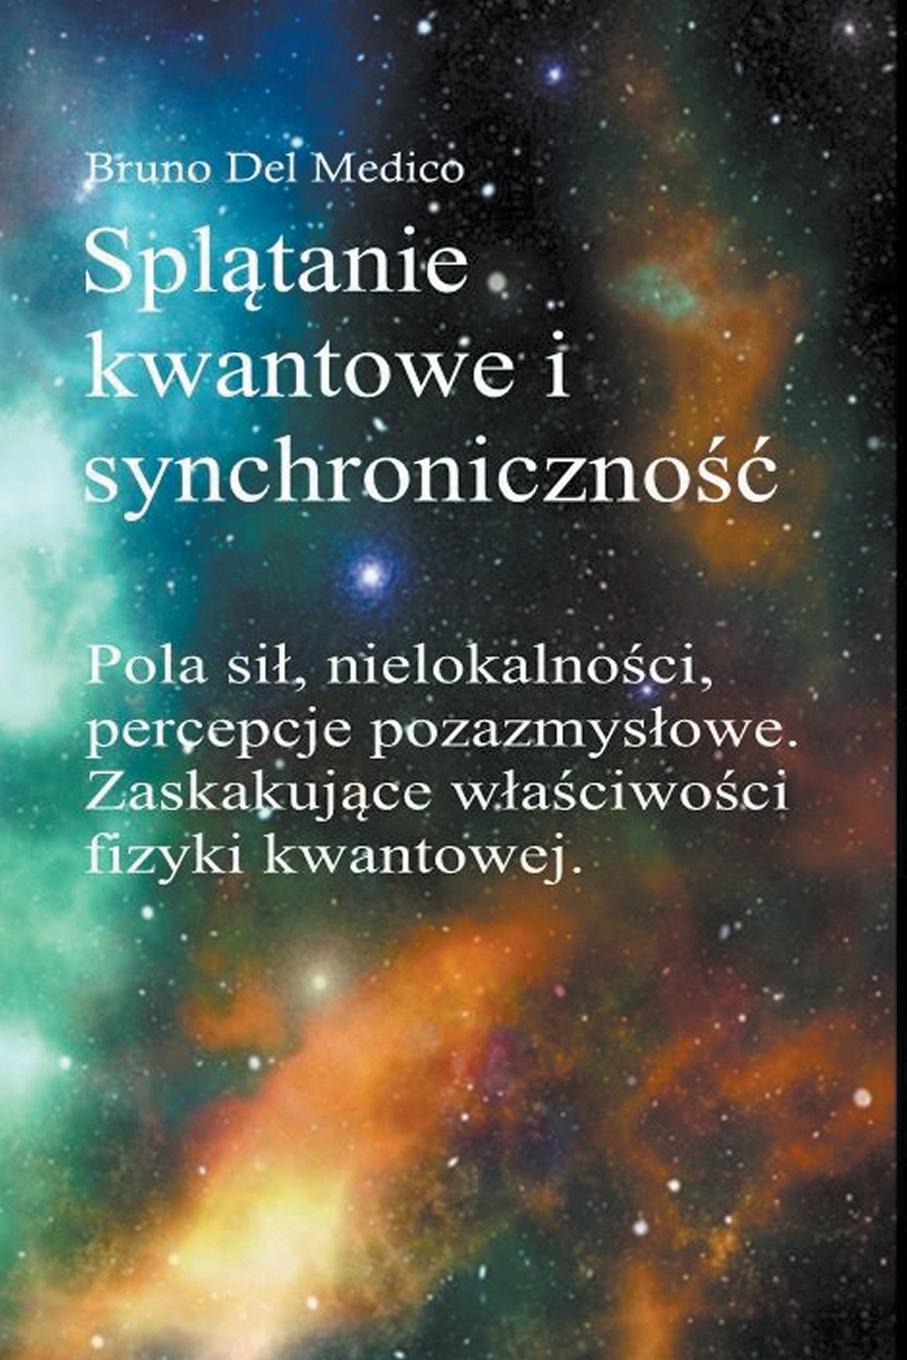 Kniha Splatanie kwantowe i synchronicznosc Carla Junga 